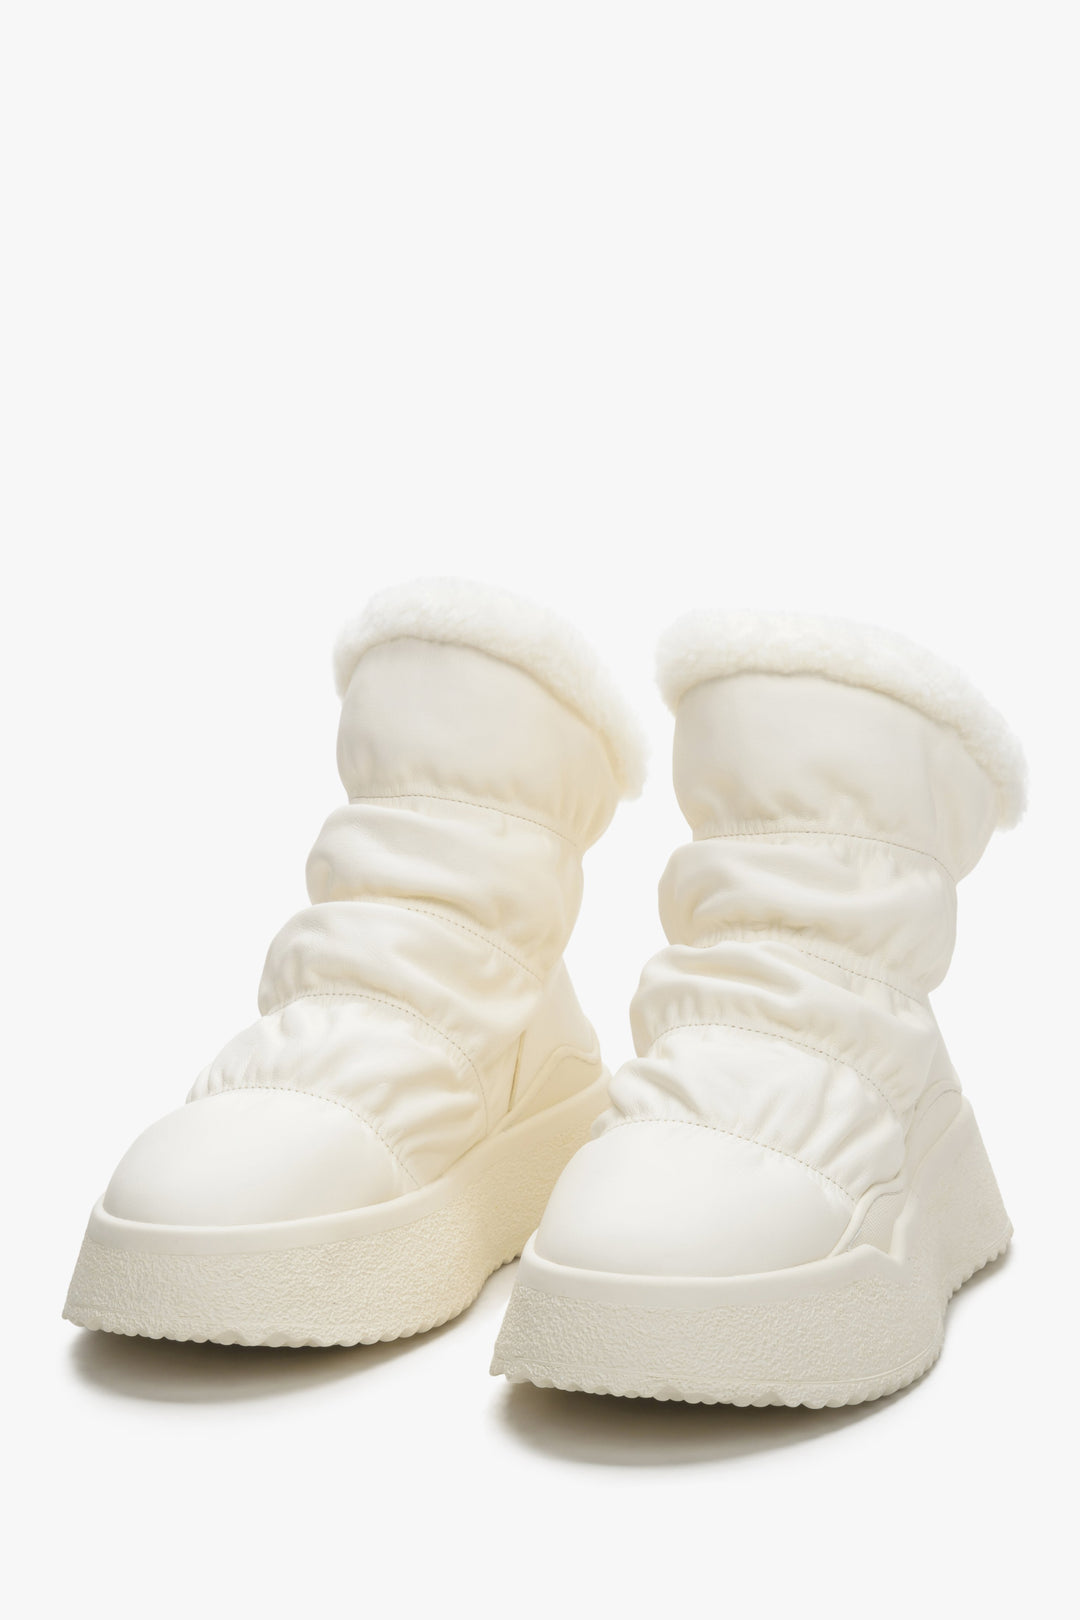 Women's light beige snow boots Estro - a close-up on shoe toeline.